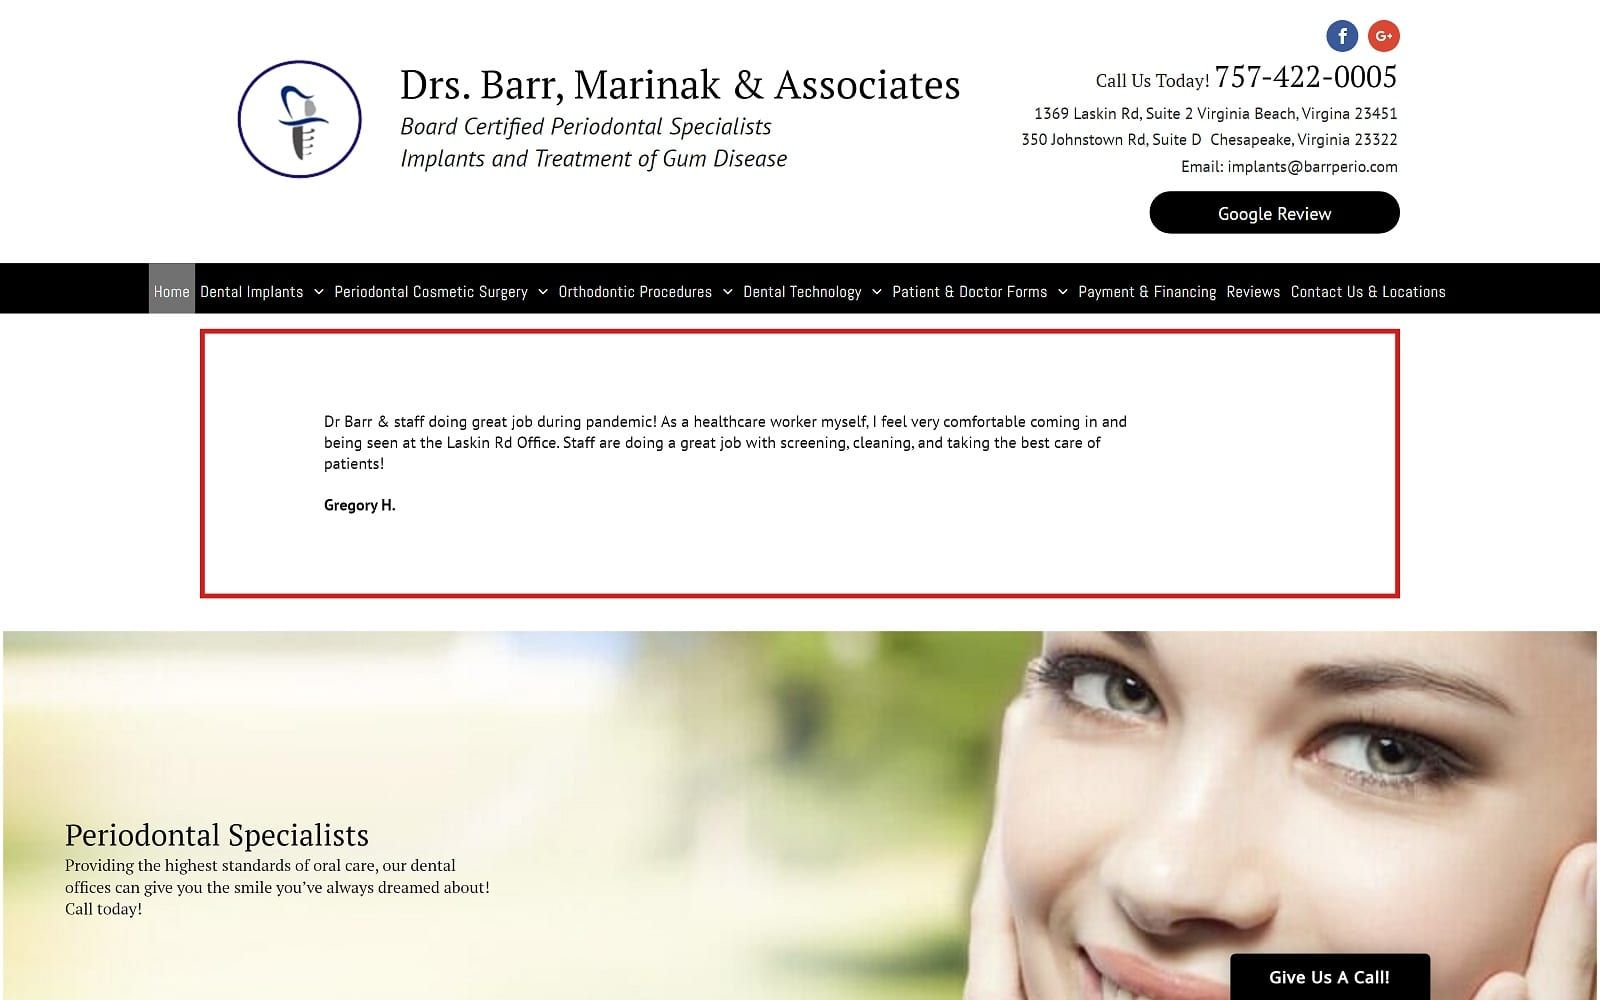 The screenshot of drs. Barr, marinak & associates barrperio. Com website